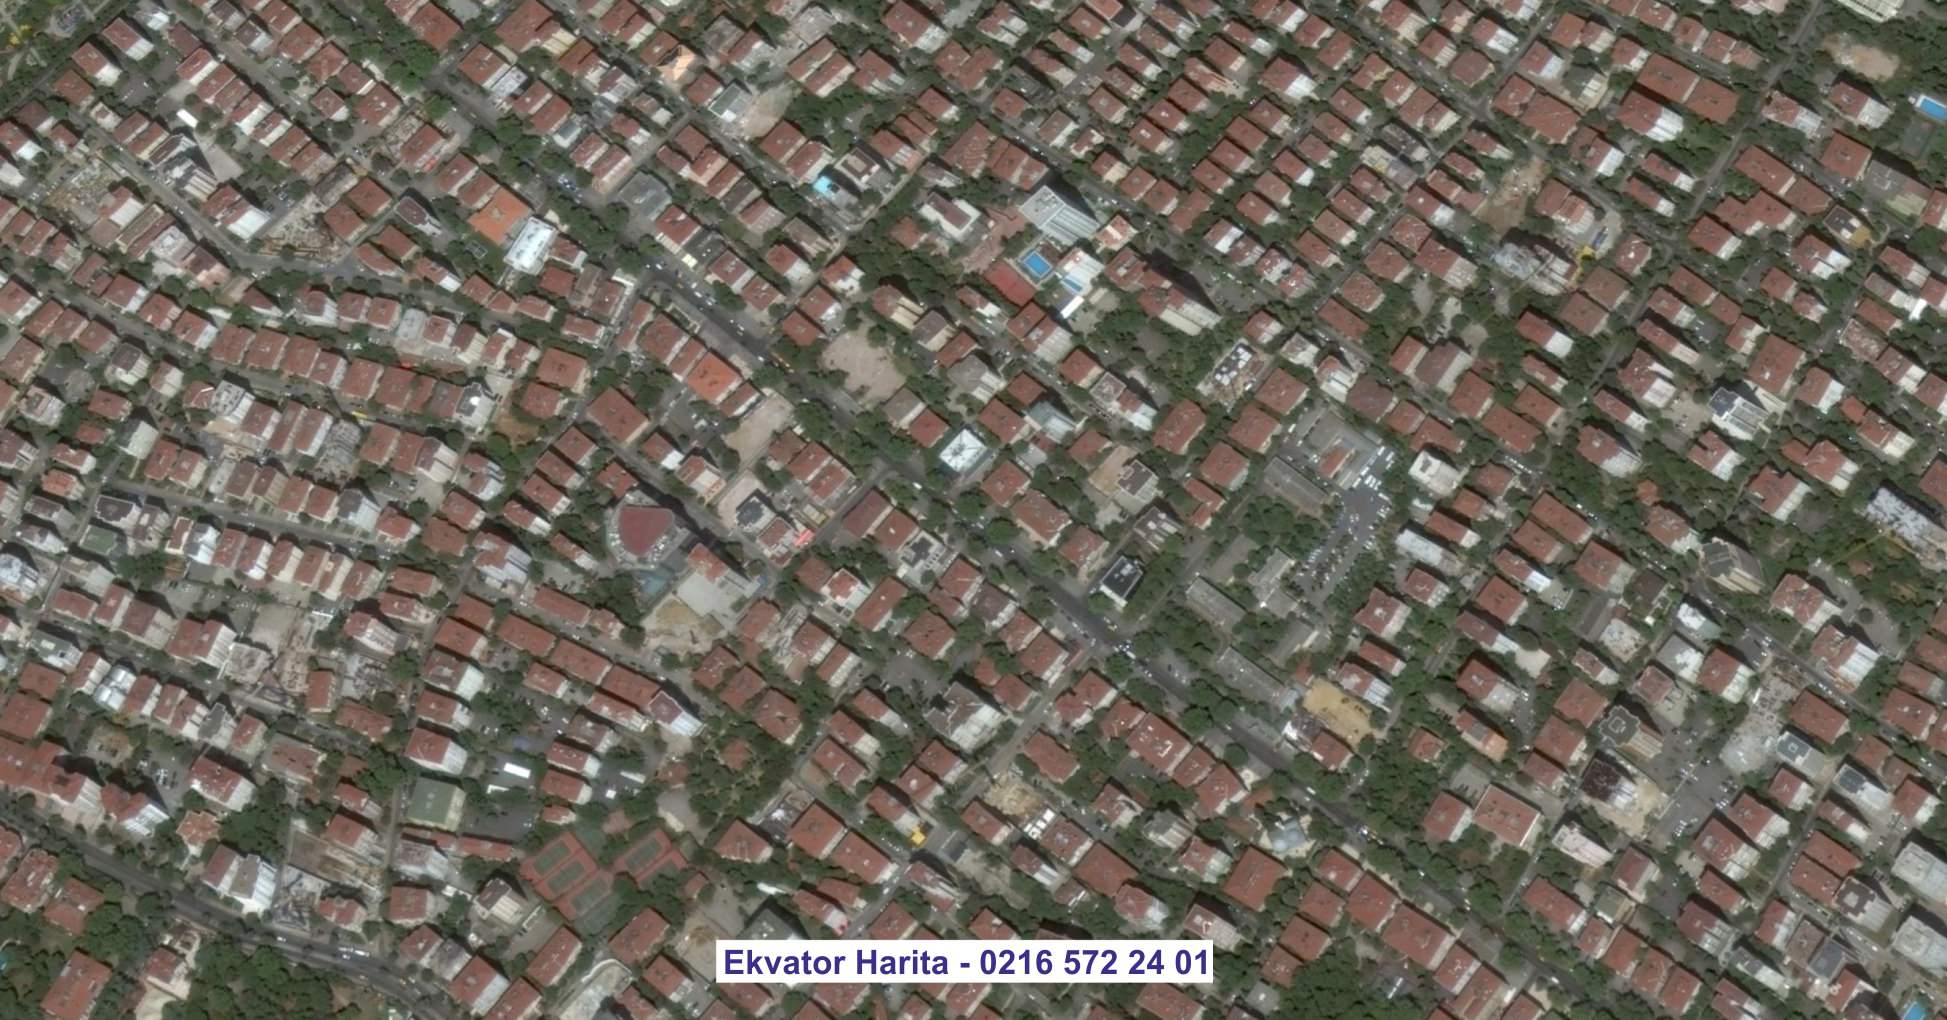 Karaman Uydu Görüntüsü Örnek Fotoğrafı